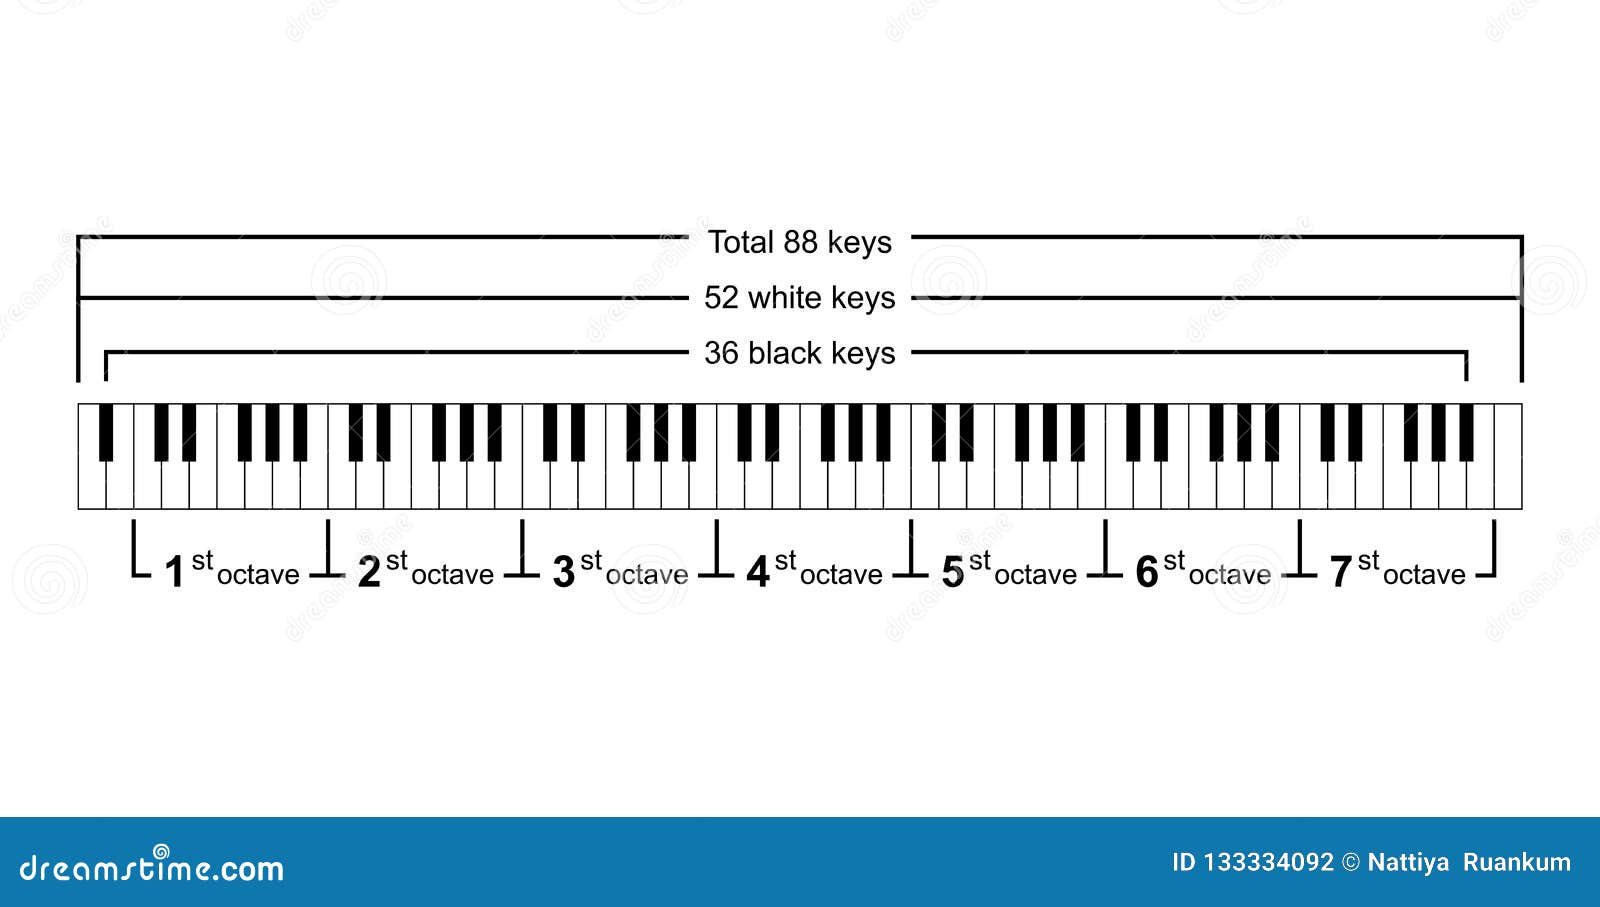 Piano Keys Chart